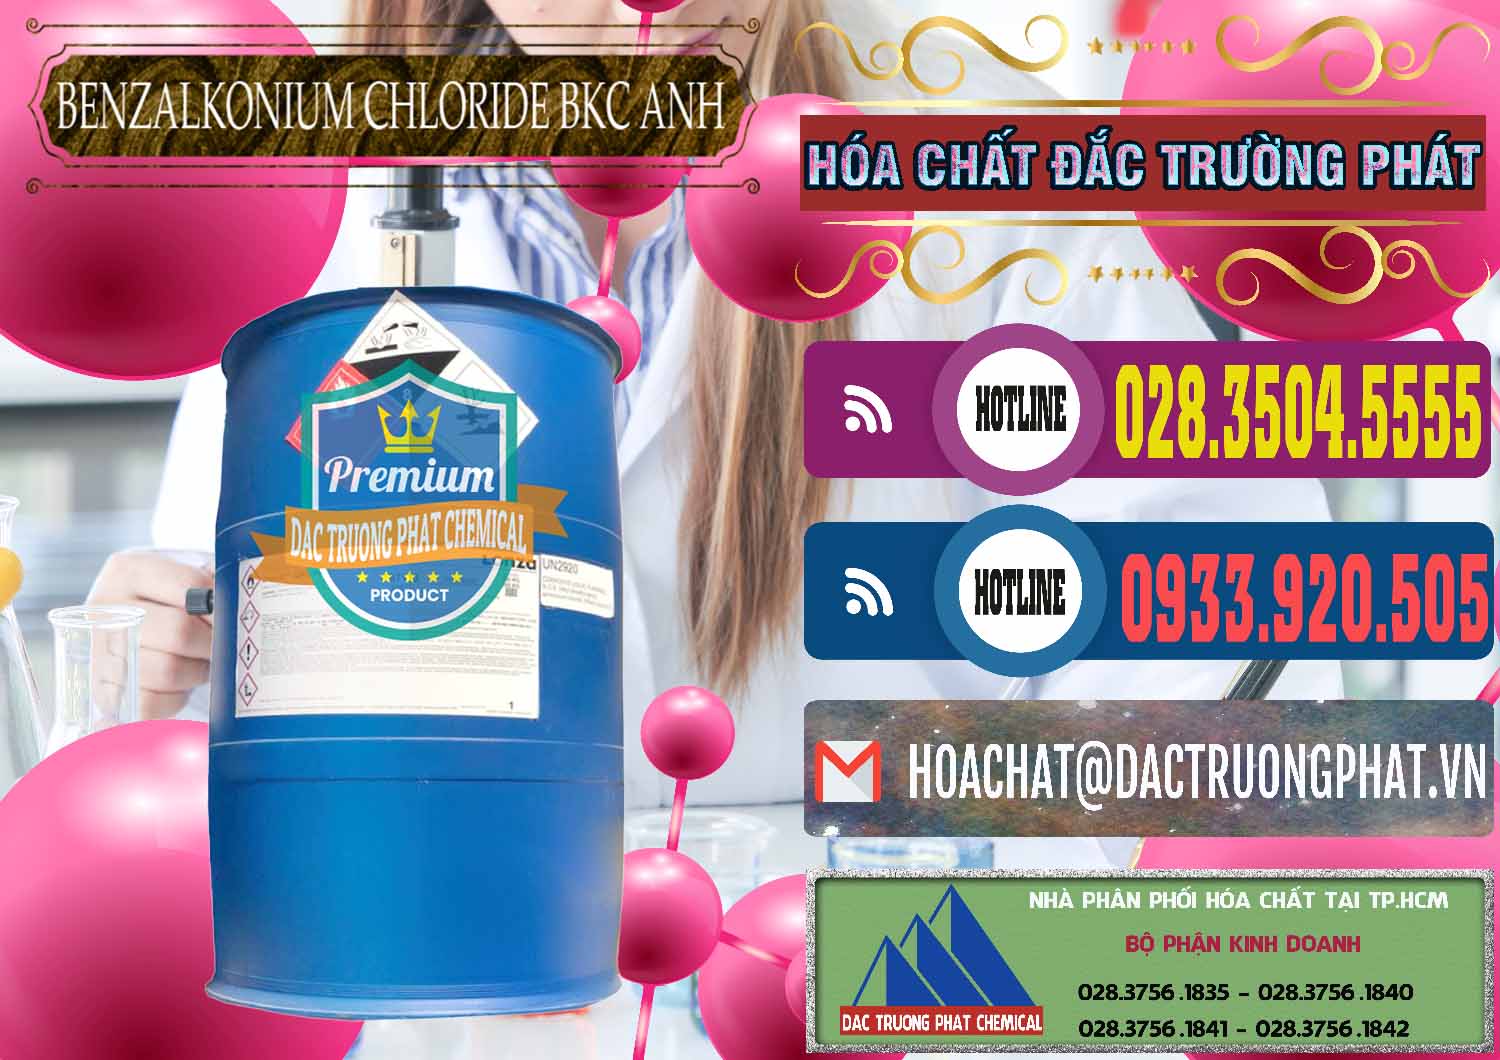 Nơi chuyên kinh doanh - bán BKC - Benzalkonium Chloride 80% Anh Quốc Uk Kingdoms - 0457 - Nhà phân phối ( bán ) hóa chất tại TP.HCM - muabanhoachat.com.vn